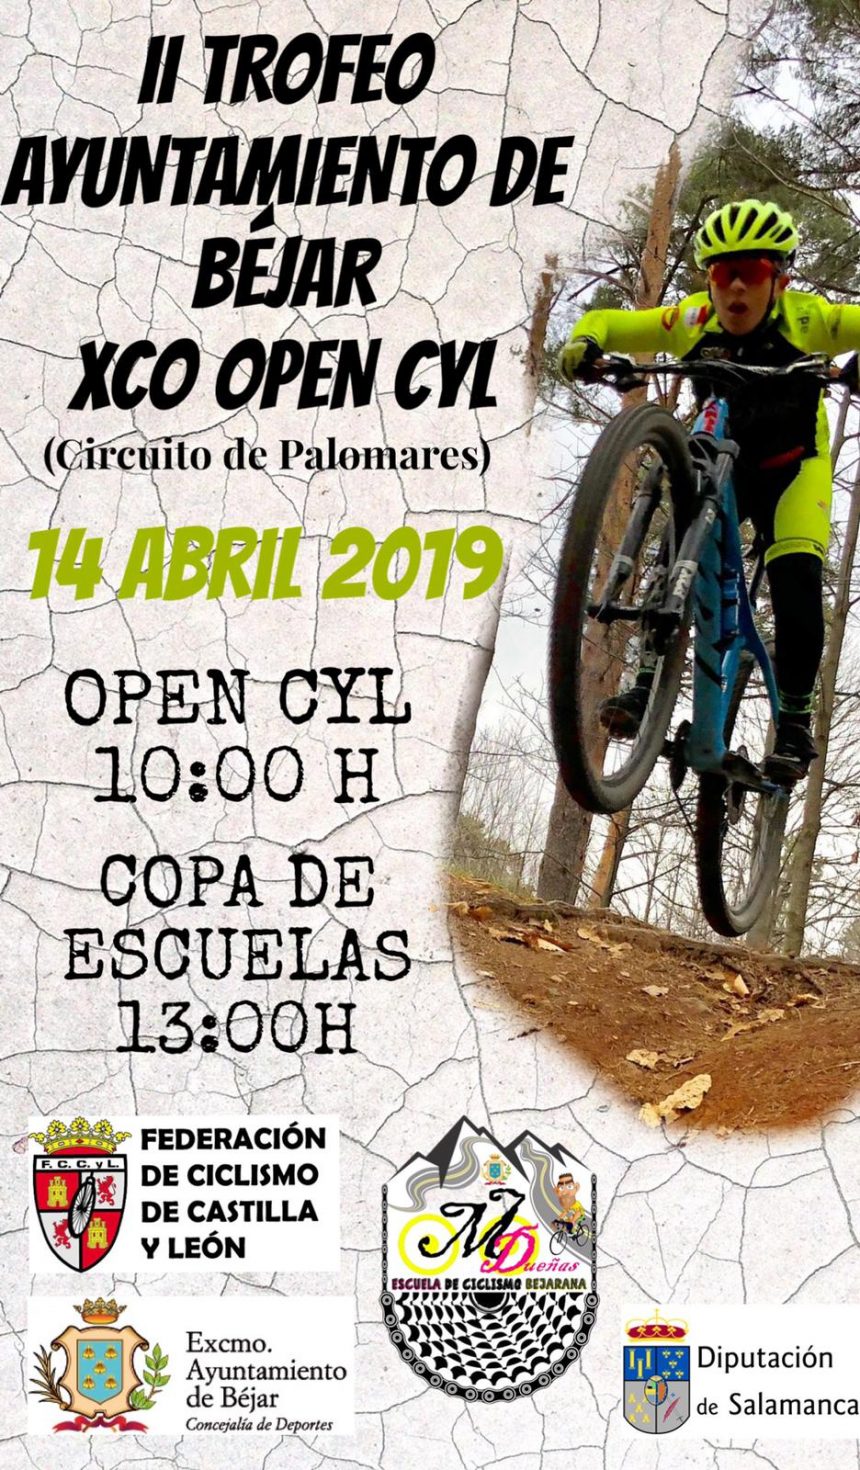 Horarios Open BTT XCO CyL y Copa de Escuelas